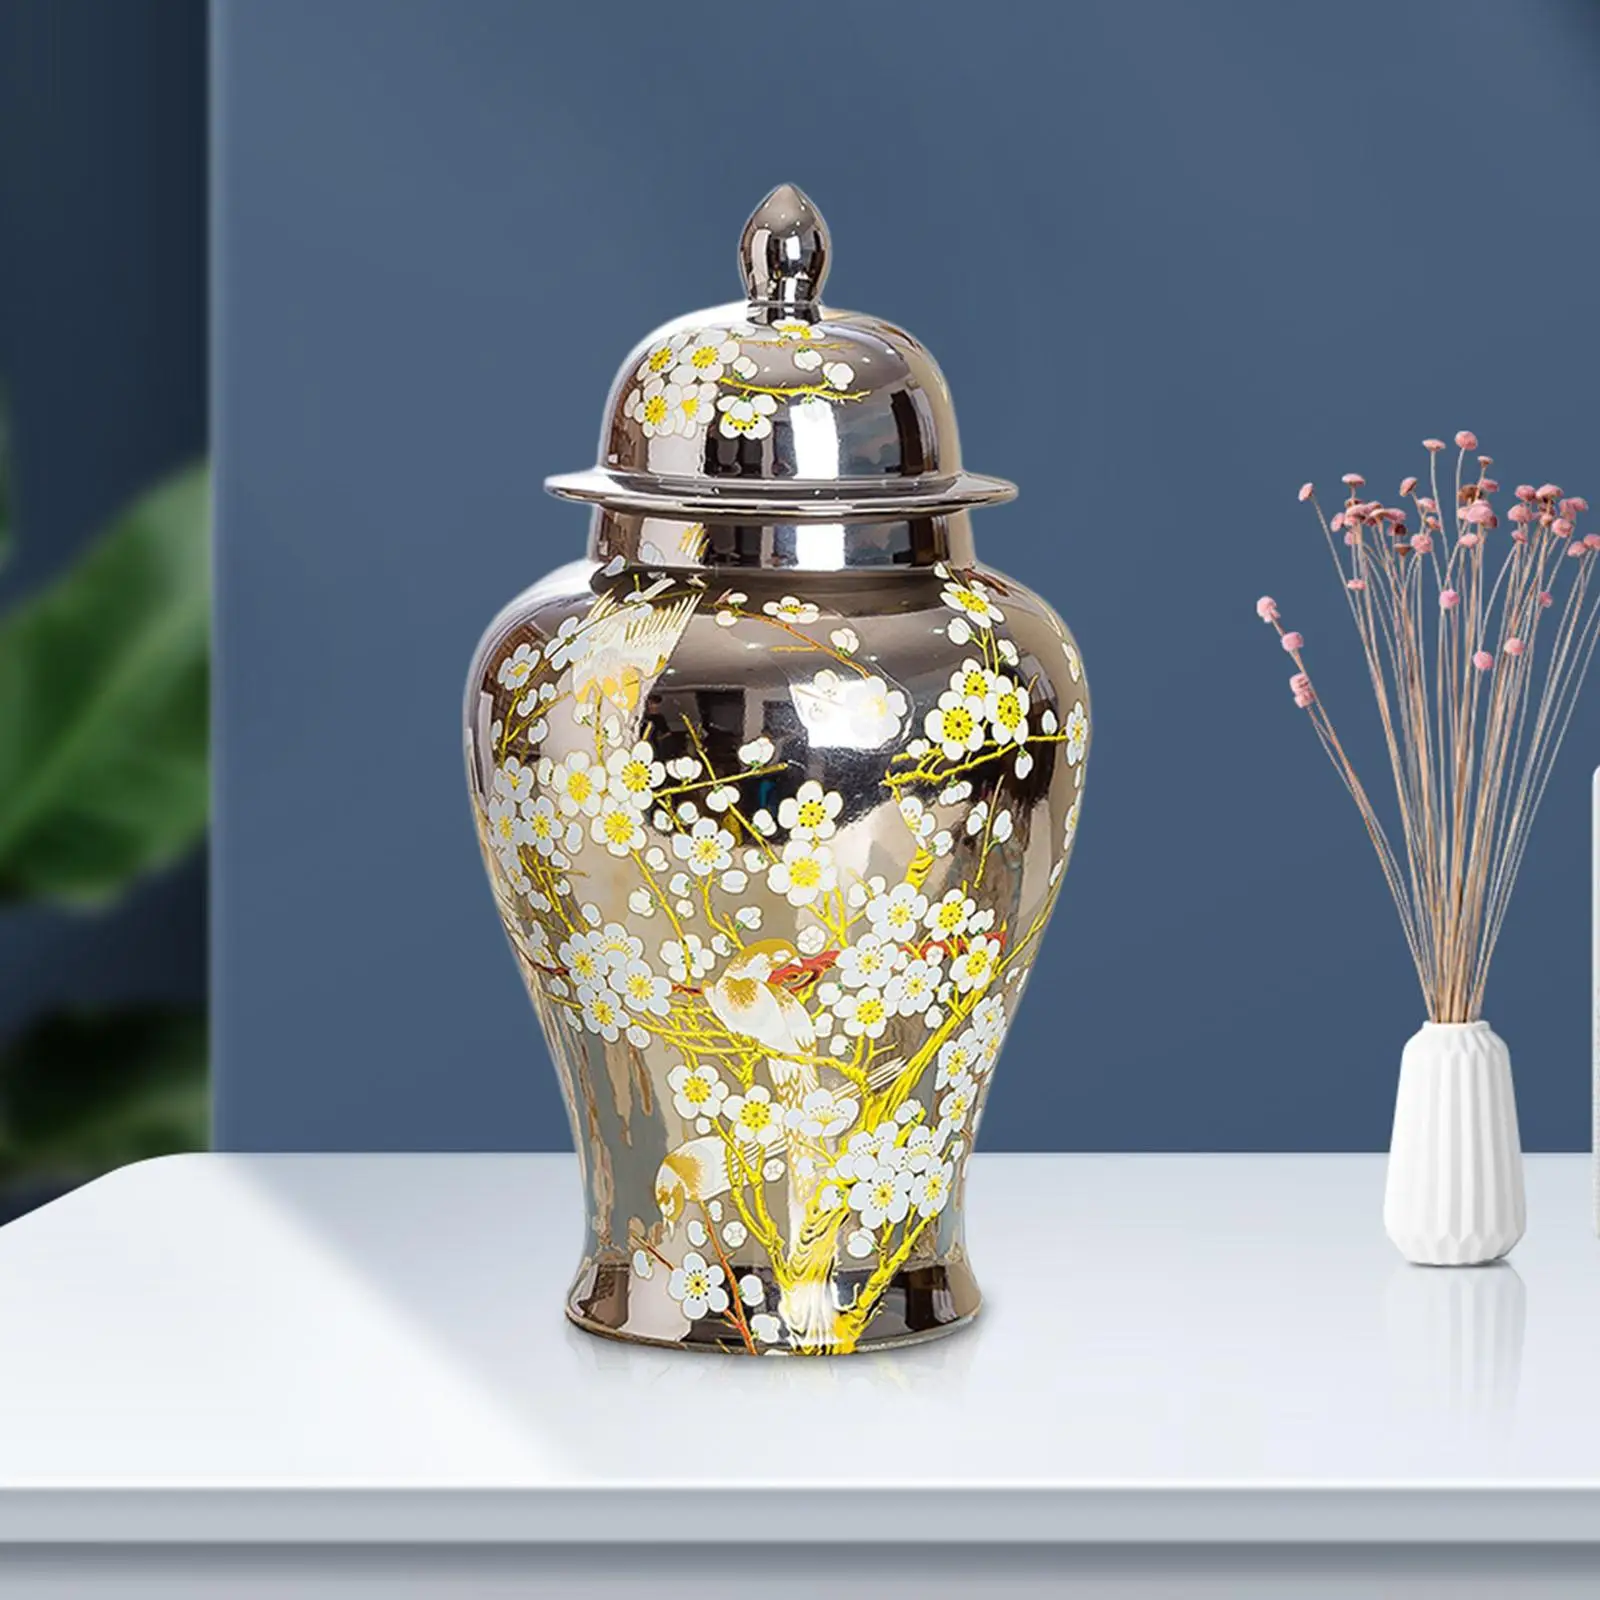 Porcelain Ginger Jar Temple Jar Storage Table Centerpiece Holder Ornaments Desktop Ceramic Flower Vase for Home Dining Room